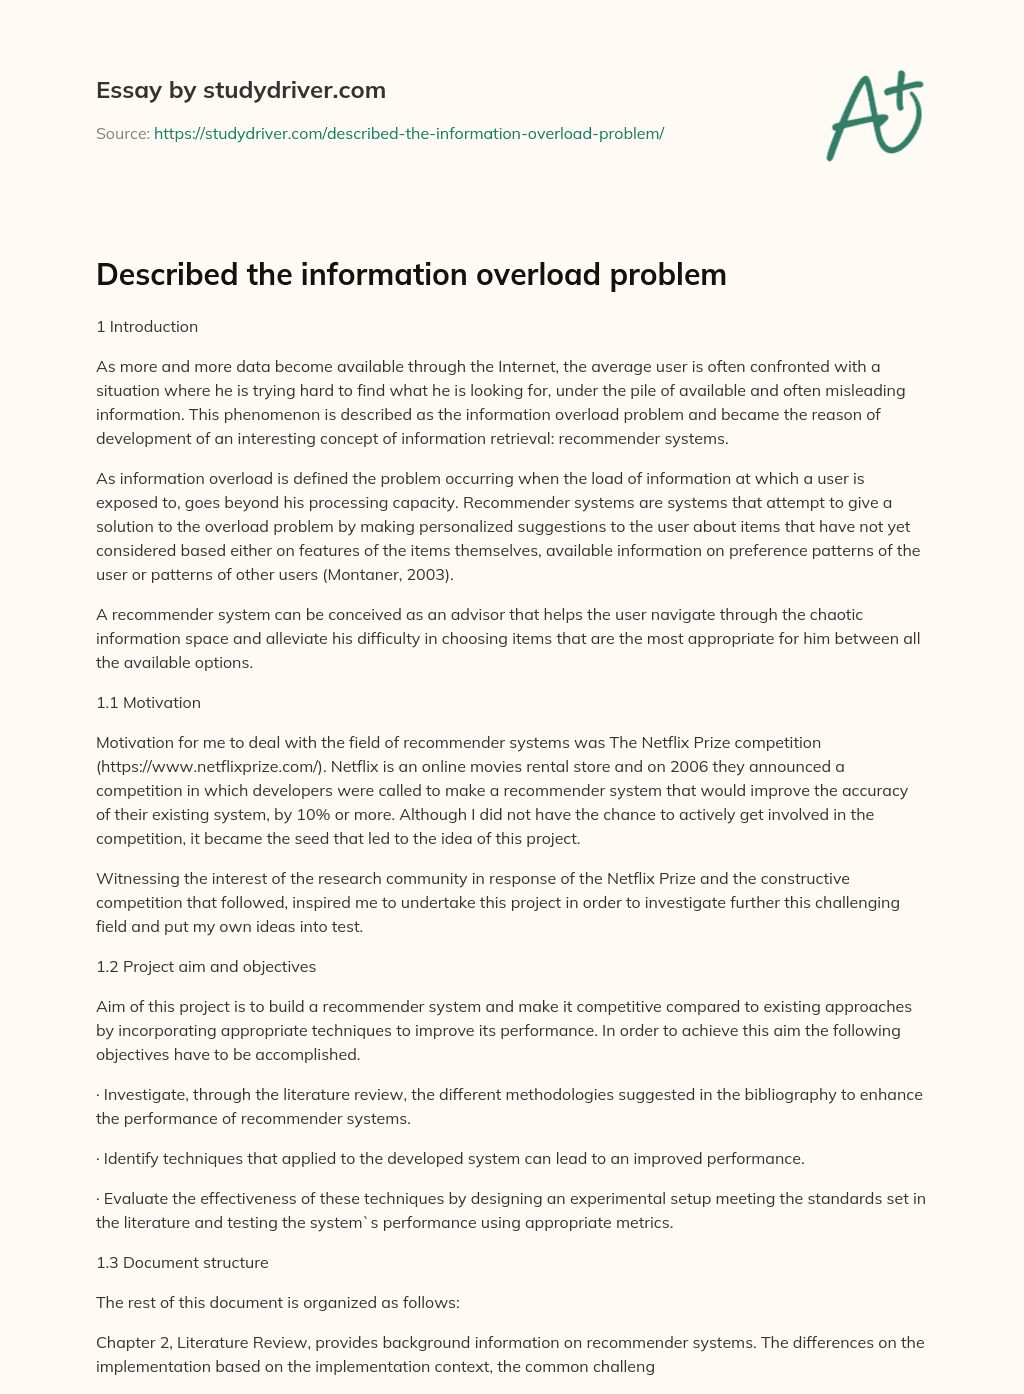 Described the Information Overload Problem essay